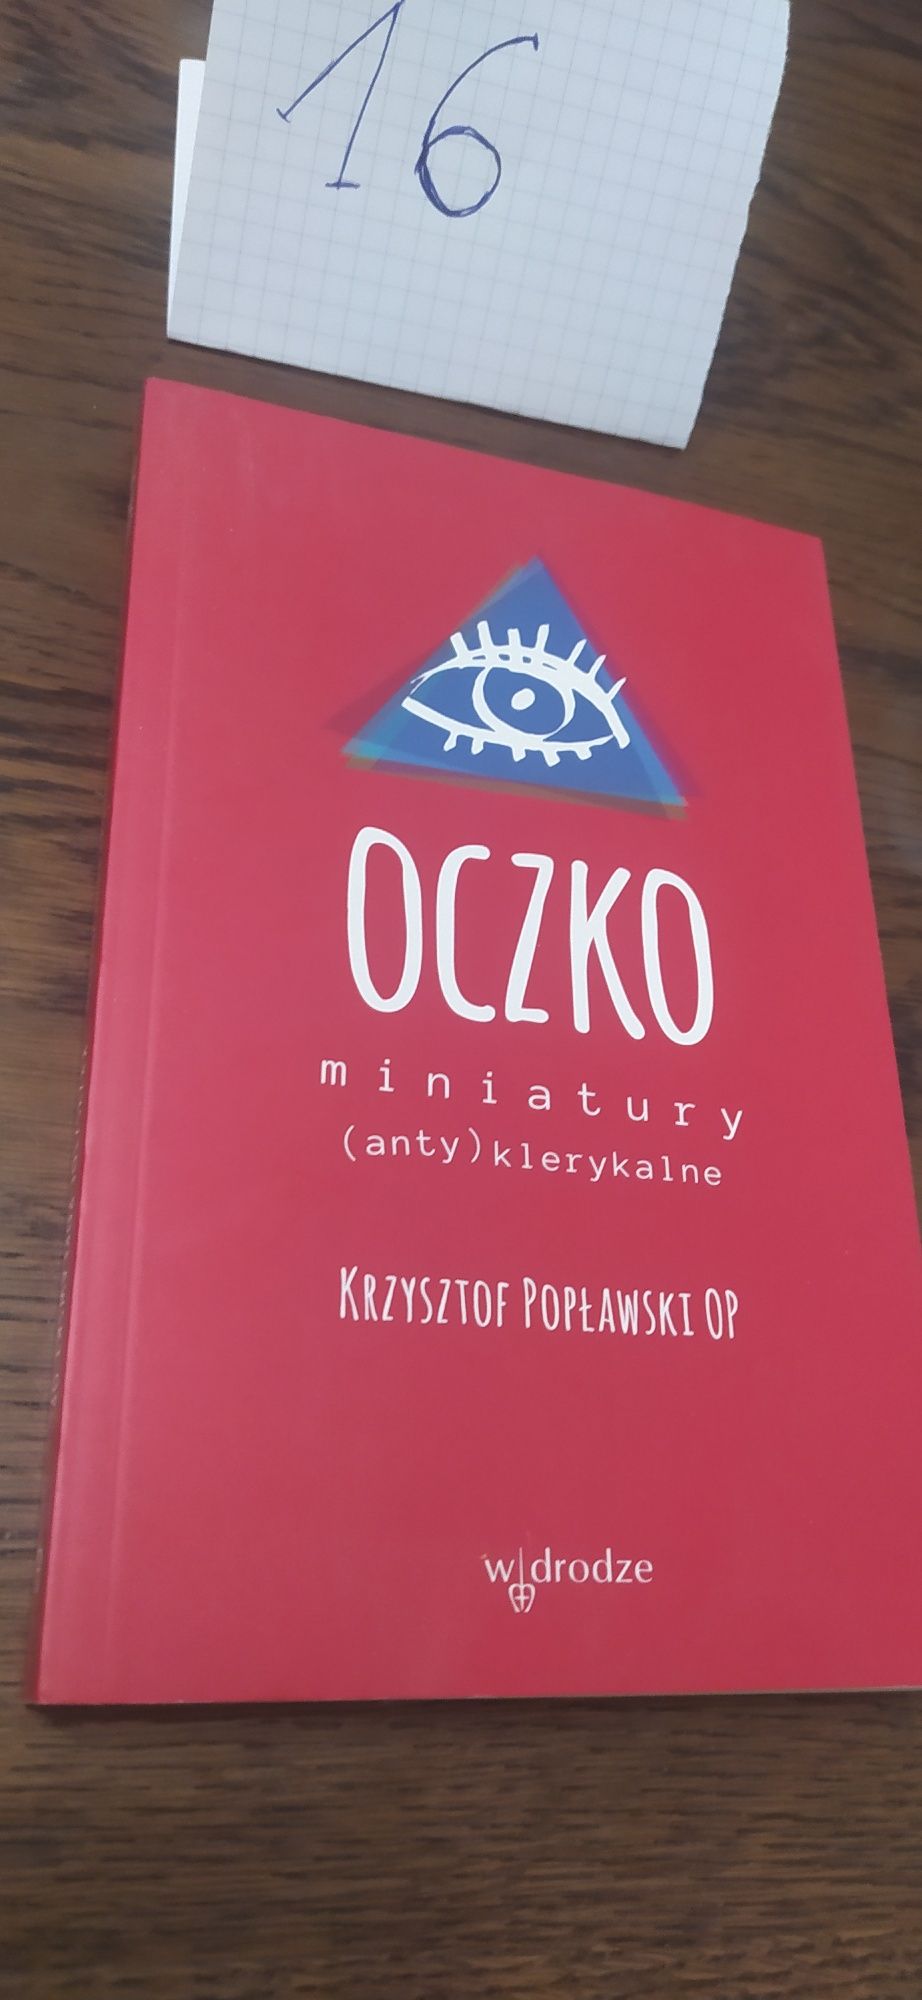 Oczko Krzysztof Popławski Op